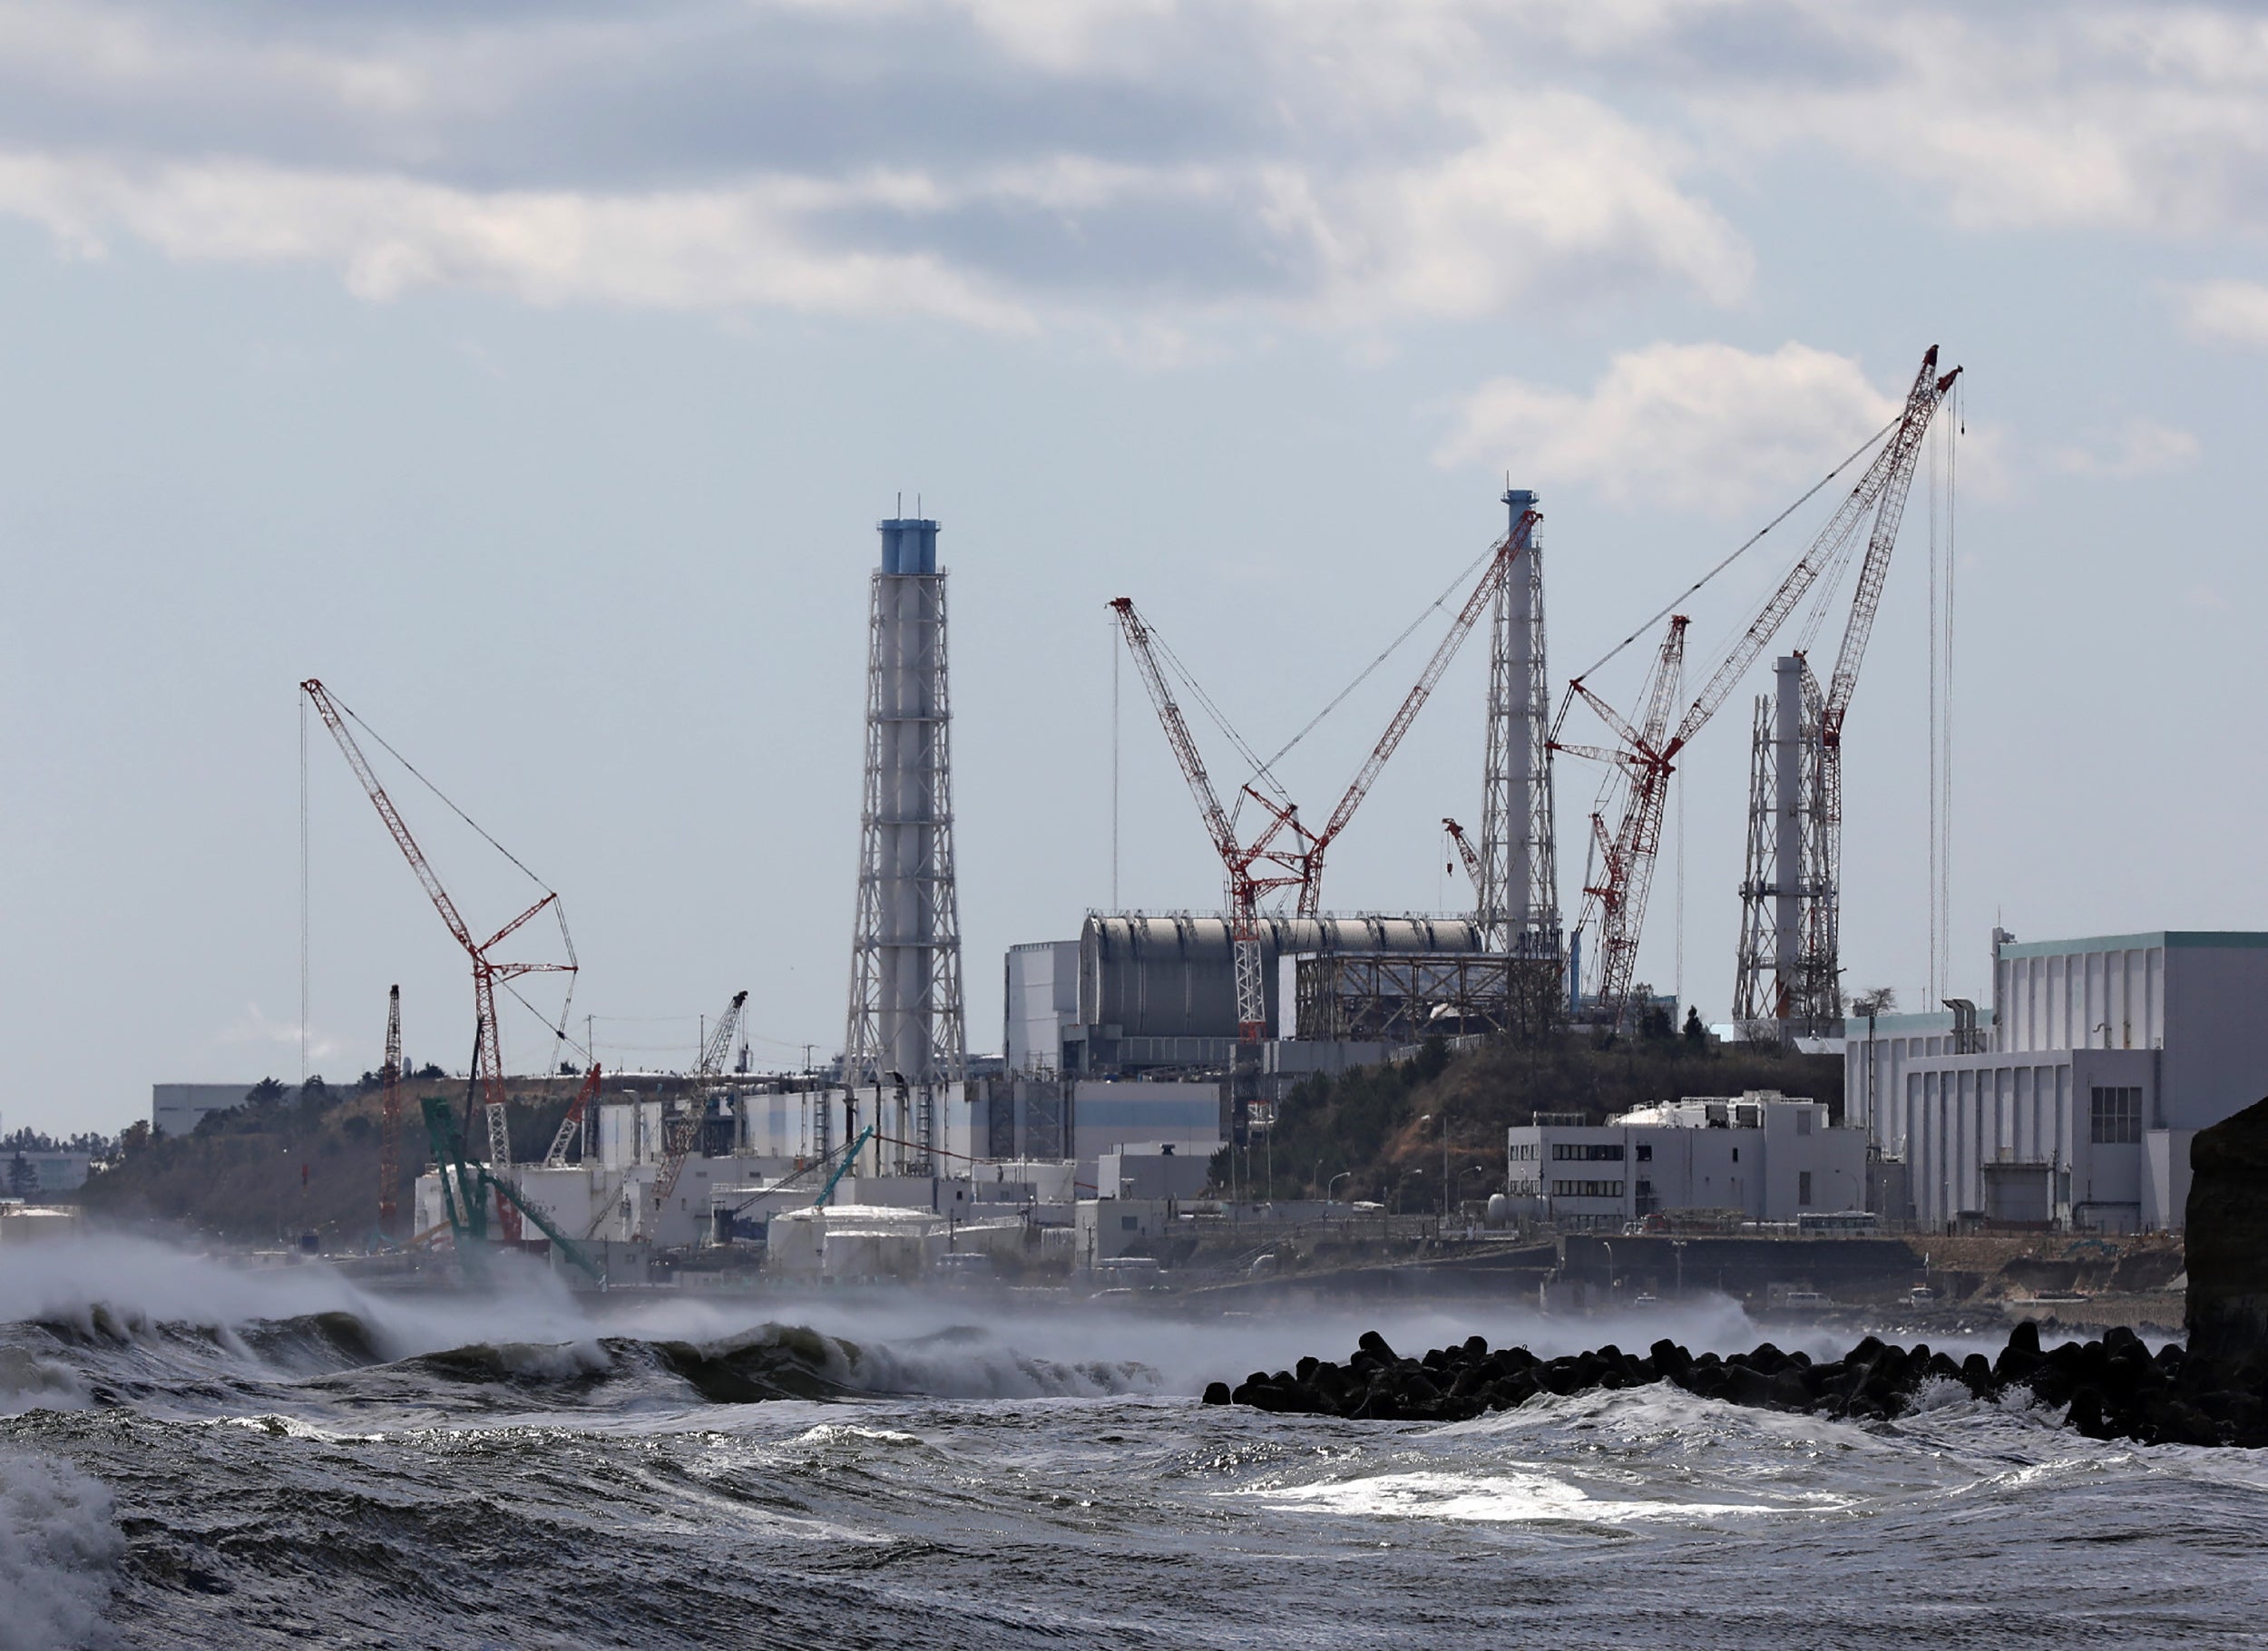 La planta de energía nuclear de Fukushima en Japón fue golpeada por un tsunami masivo en 2011